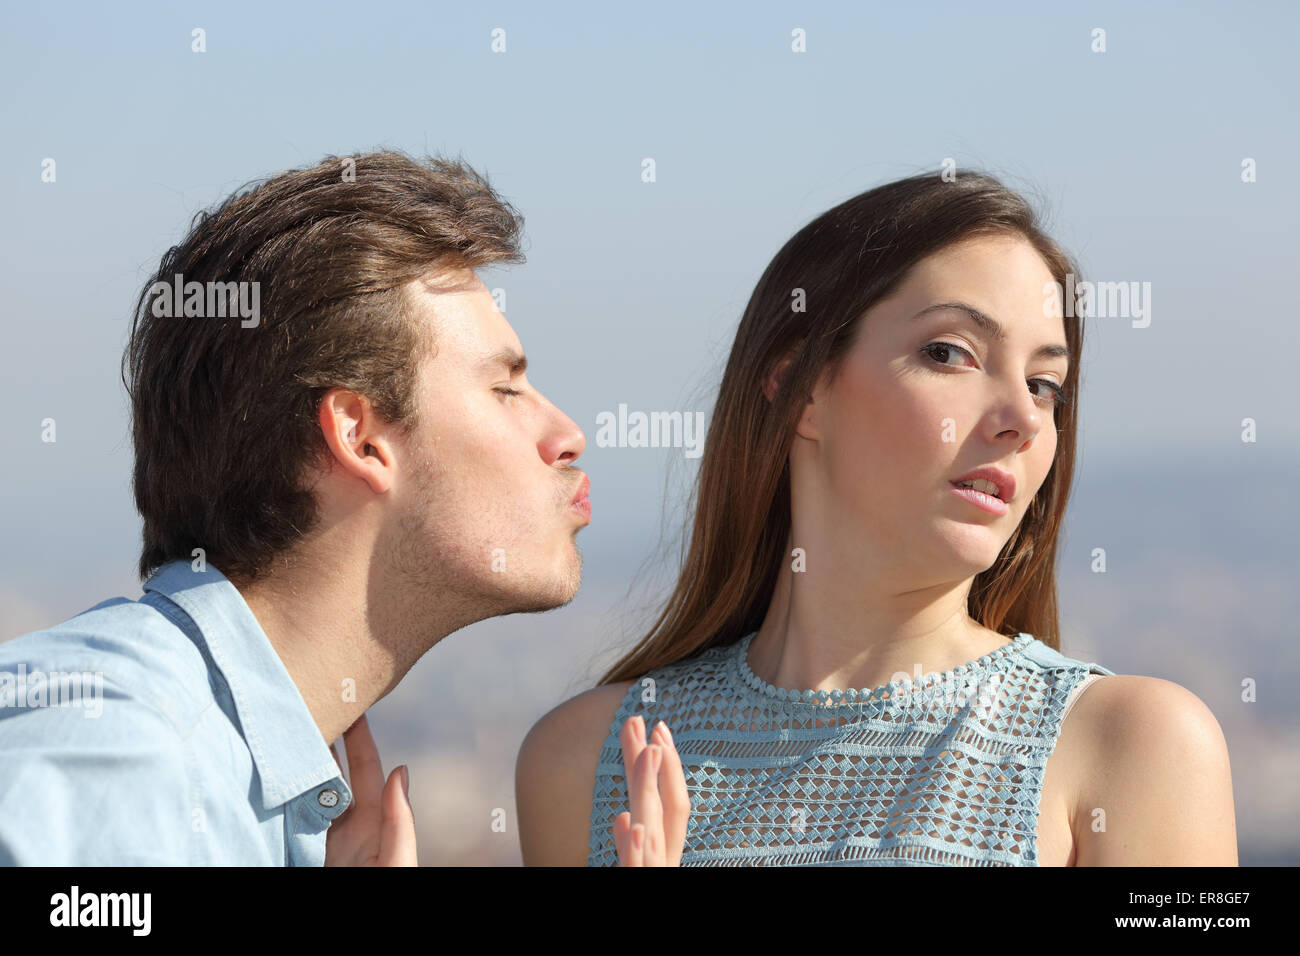 Amico il concetto di zona con un uomo che cerca di baciare una donna e lei lo respinga Foto Stock